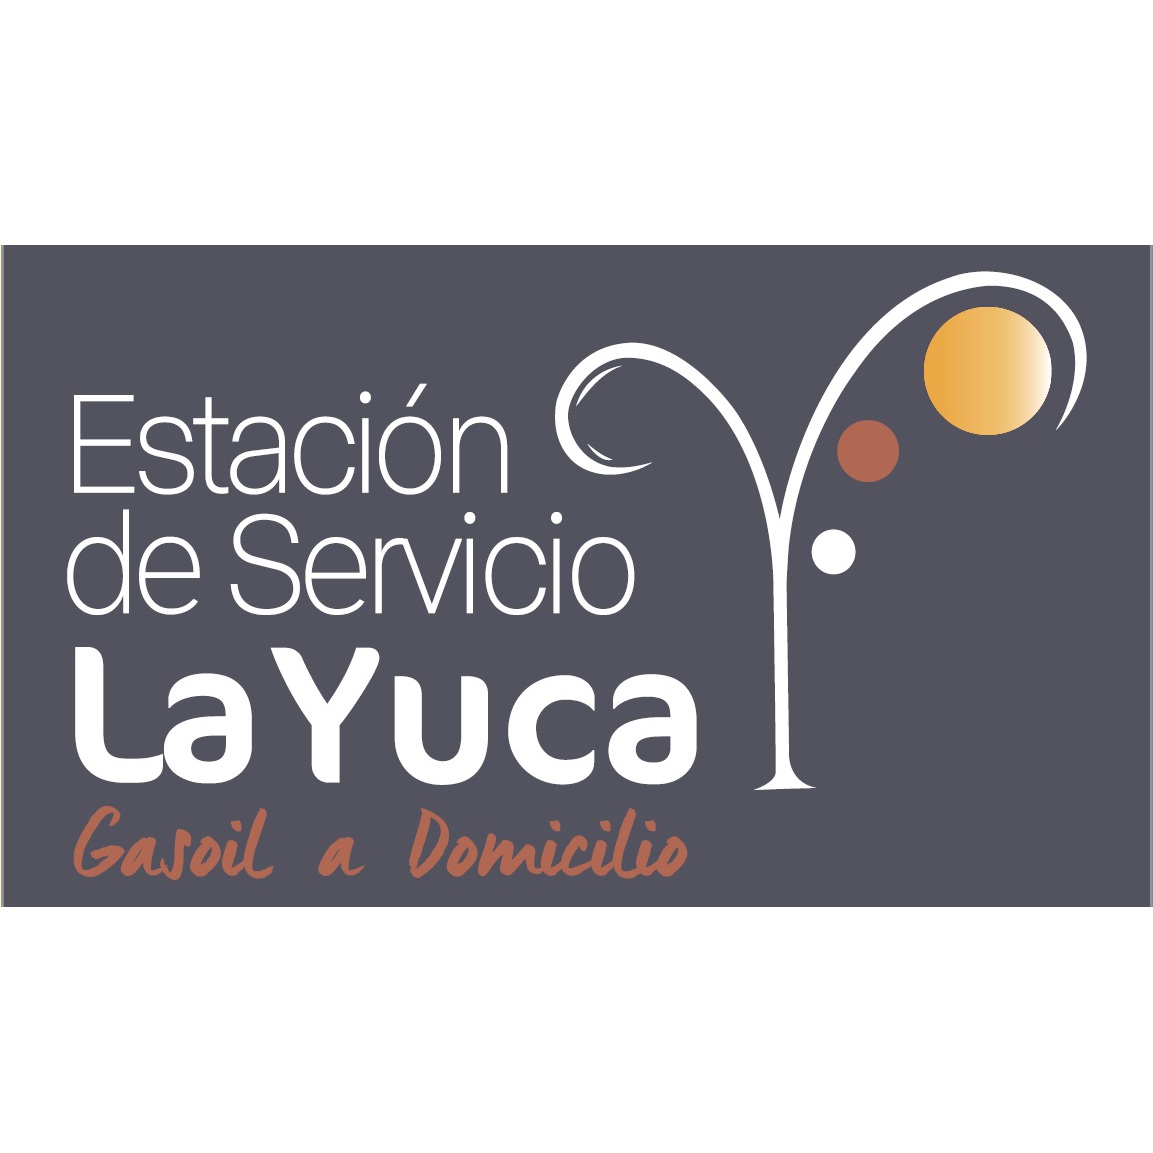 Gasoil a Domicilio la Yuca Jaén Logo